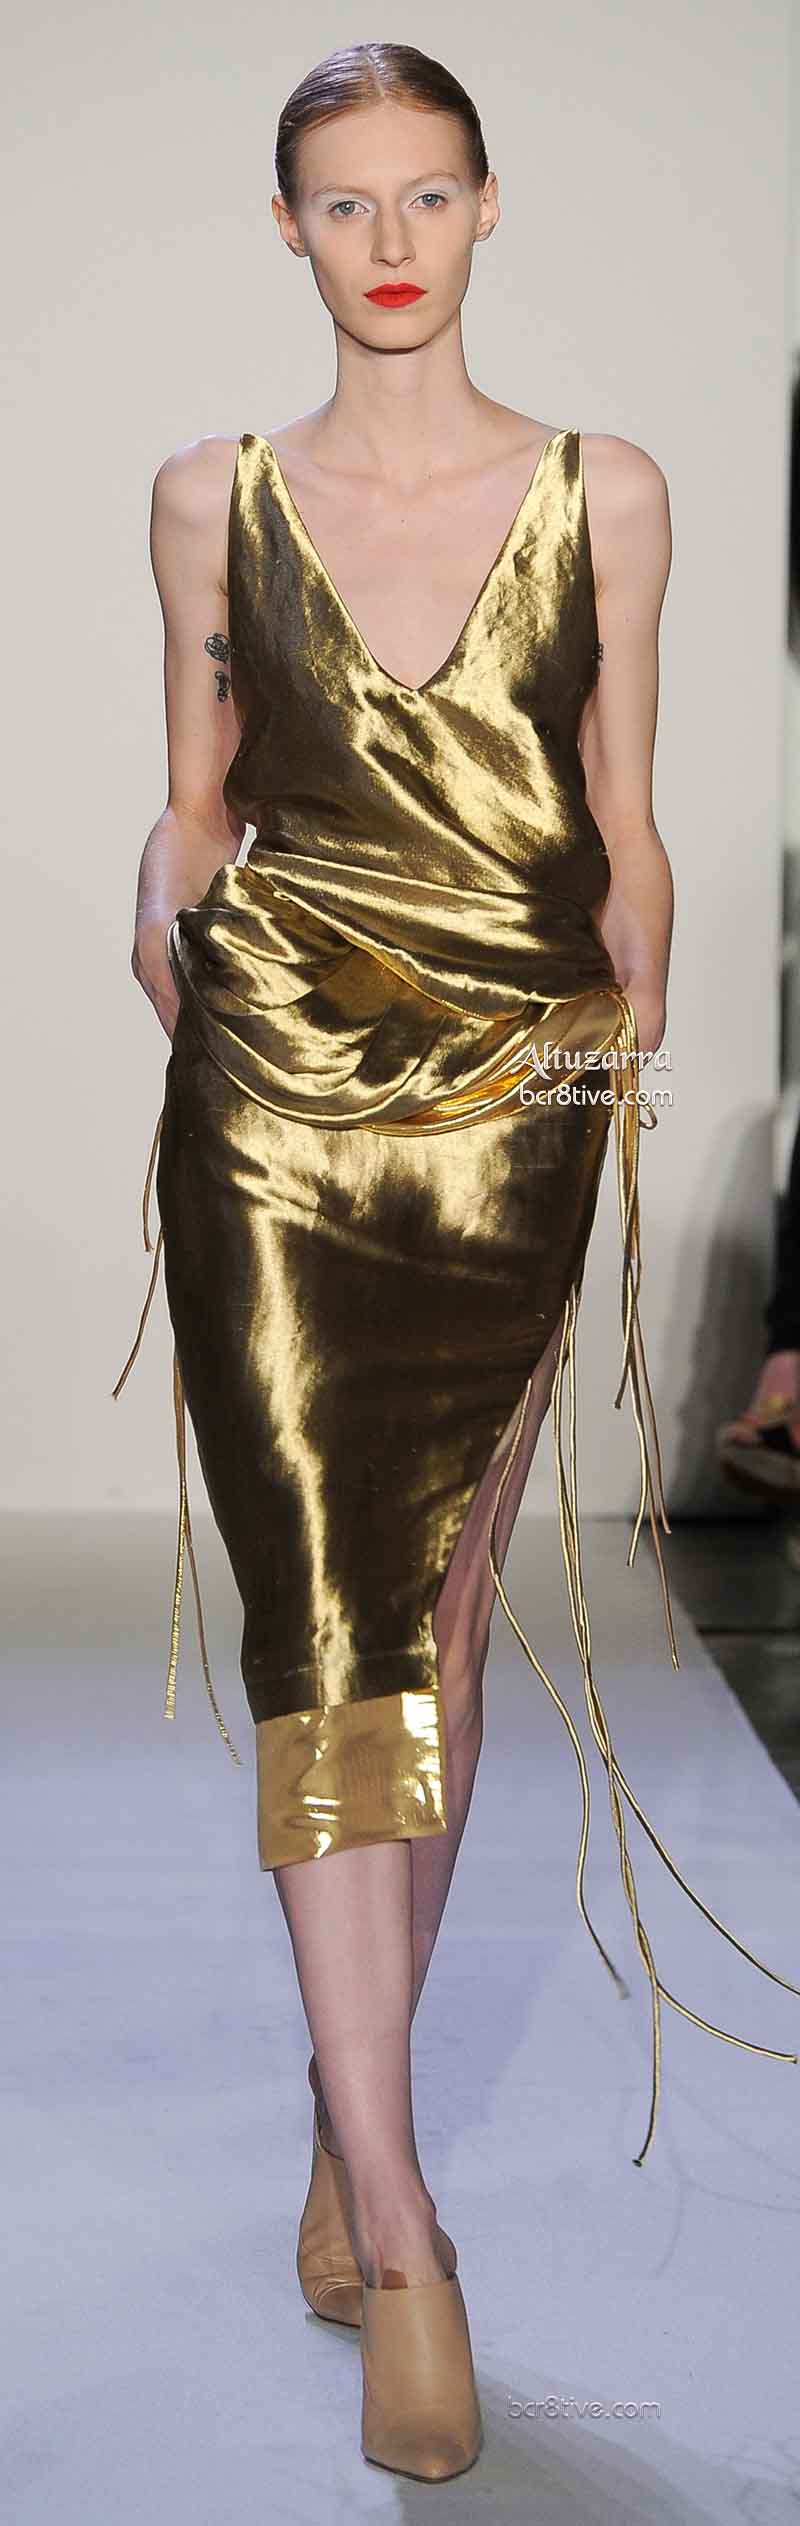 Altuzarra Liquid Metal Gold Pencil Skirt and Top